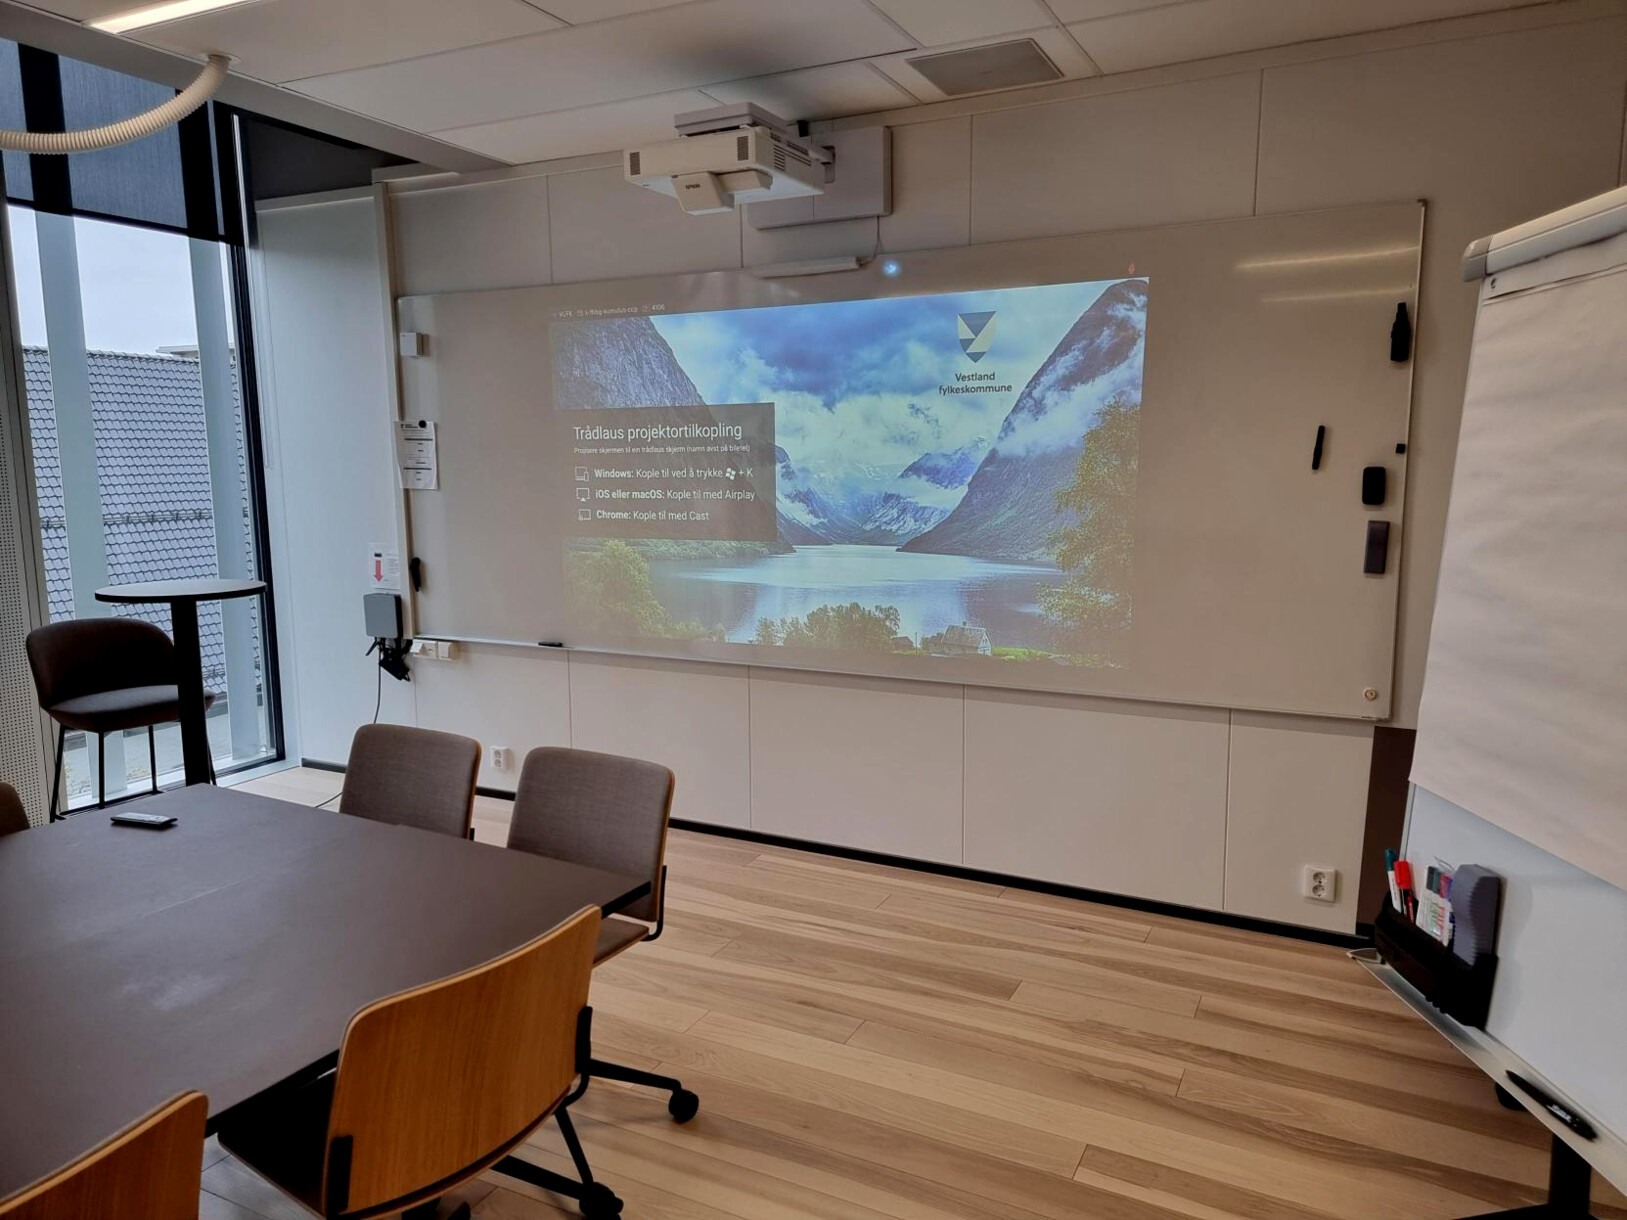 In questa aula di apprendimento ibrido, i partecipanti alle lezioni remote possono unirsi ai loro colleghi in persona utilizzando il servizio di web conferencing Microsoft Teams.